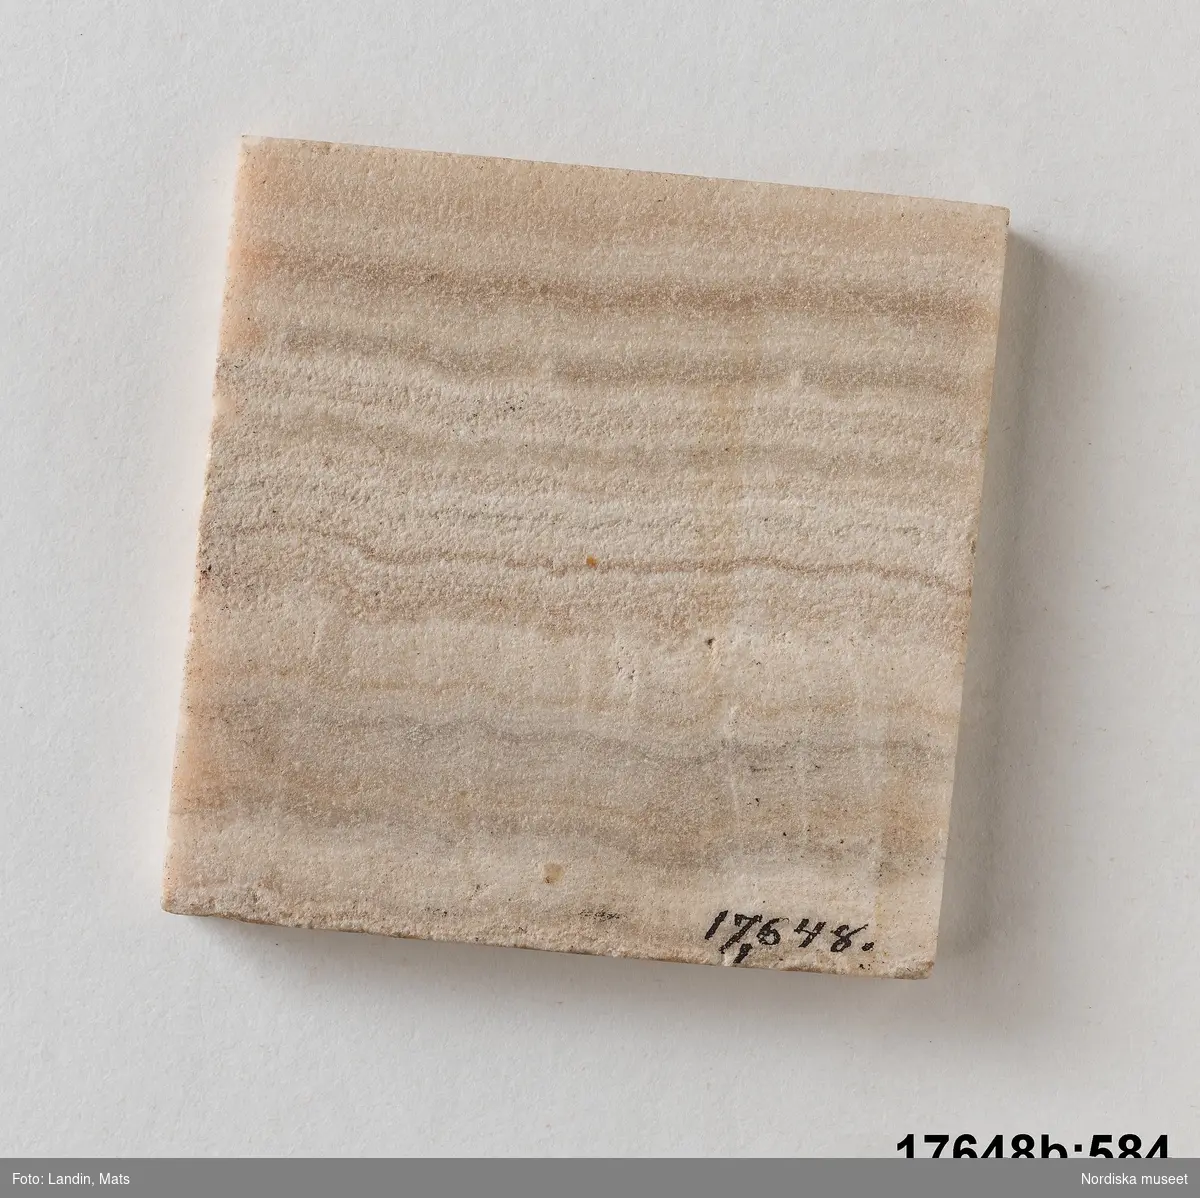 Kvadratisk platta av sten (trol. alabaster). Randigt mönster i olika bruna och vita nyanser. 
/Leif Wallin 2014-01-07